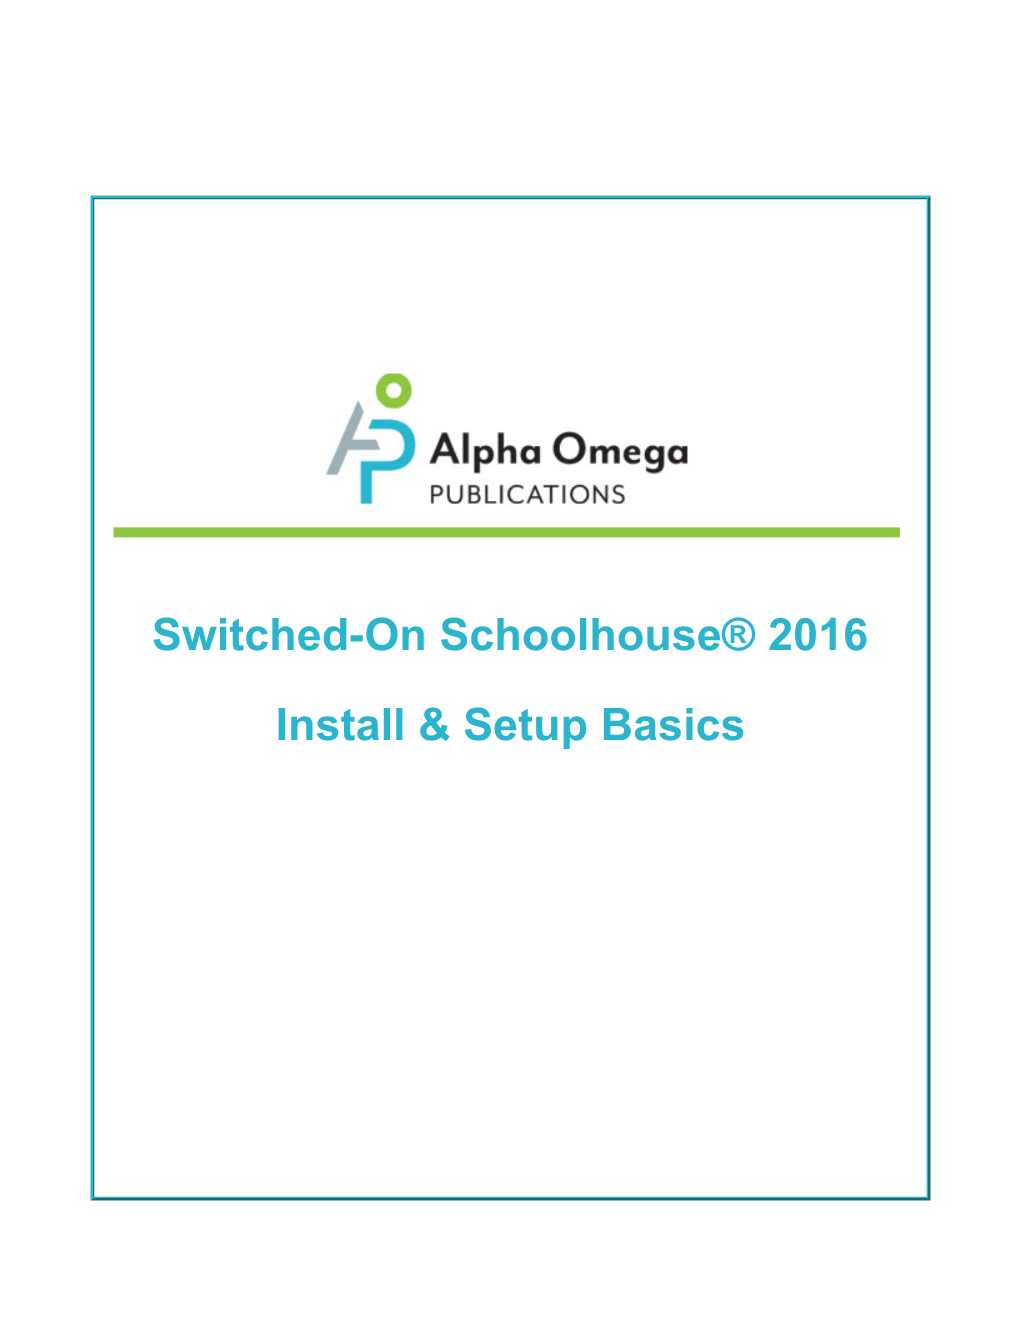 Switched-On Schoolhouse® 2016 Install & Setup Basics